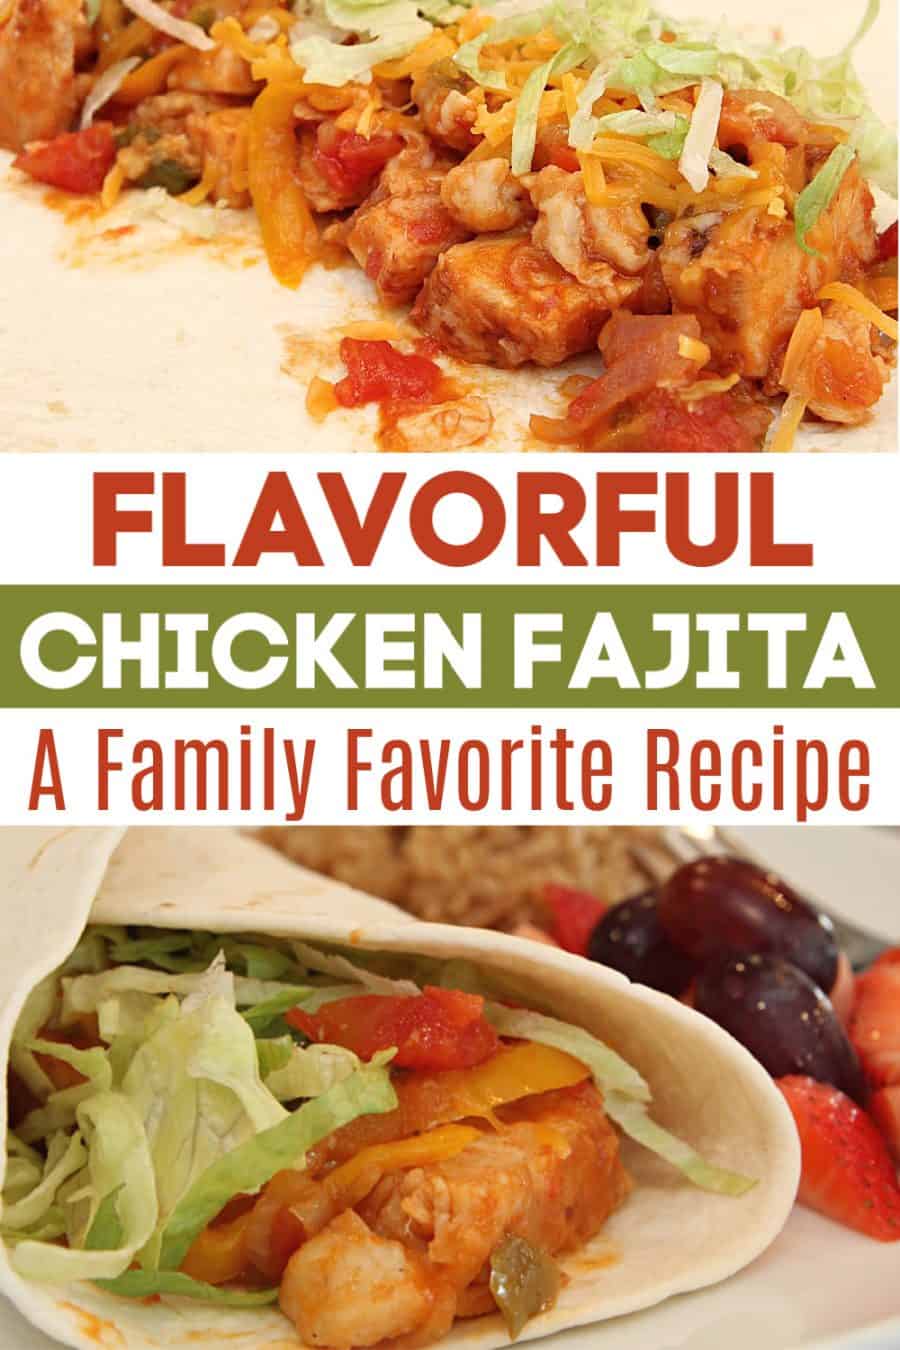 Flavorful, Easy Chicken Fajita Recipe 